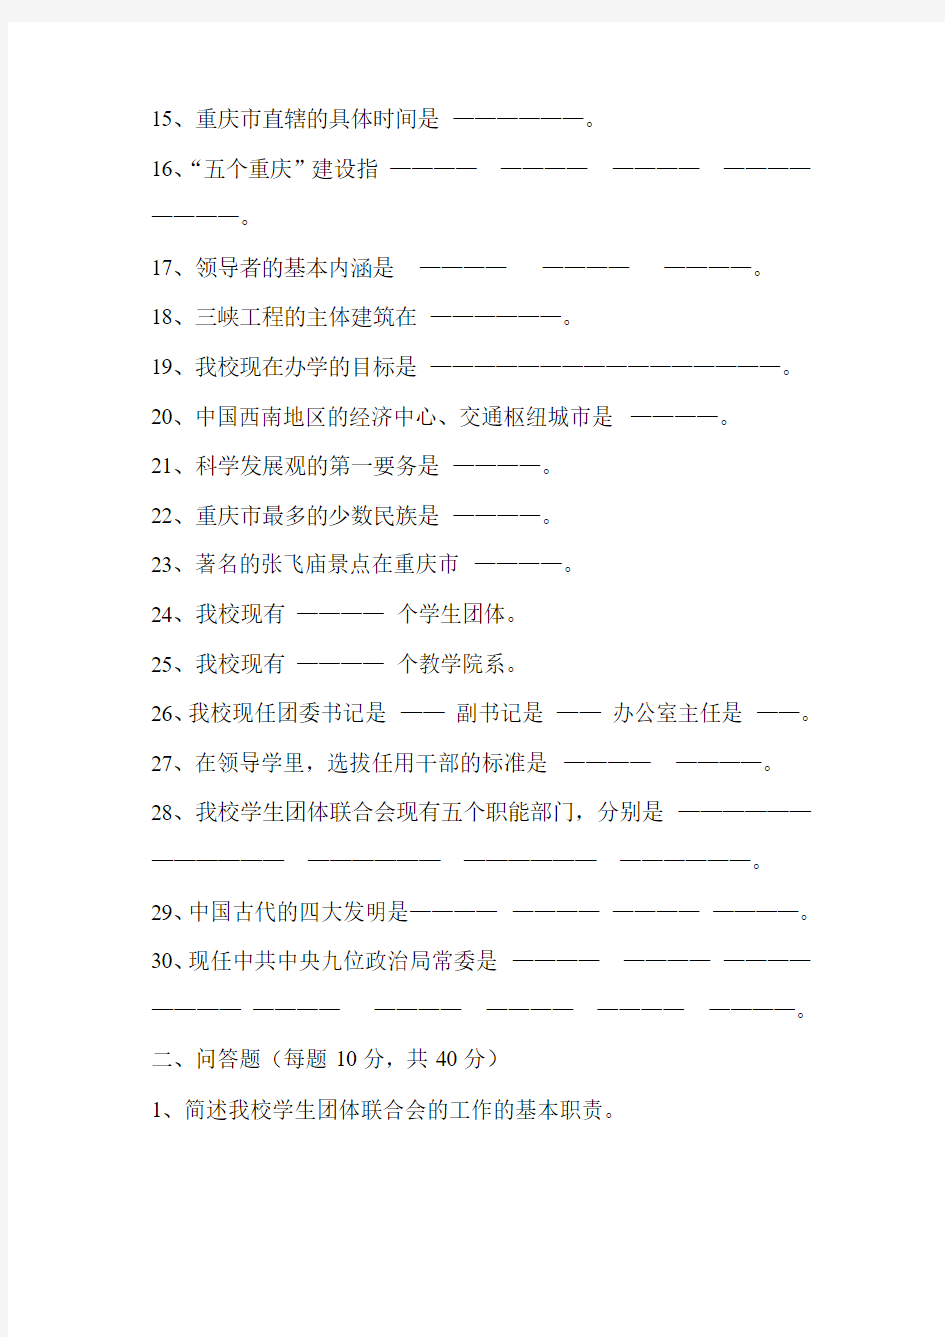 重庆三峡学院学生团体联合会干部选拔考试试卷